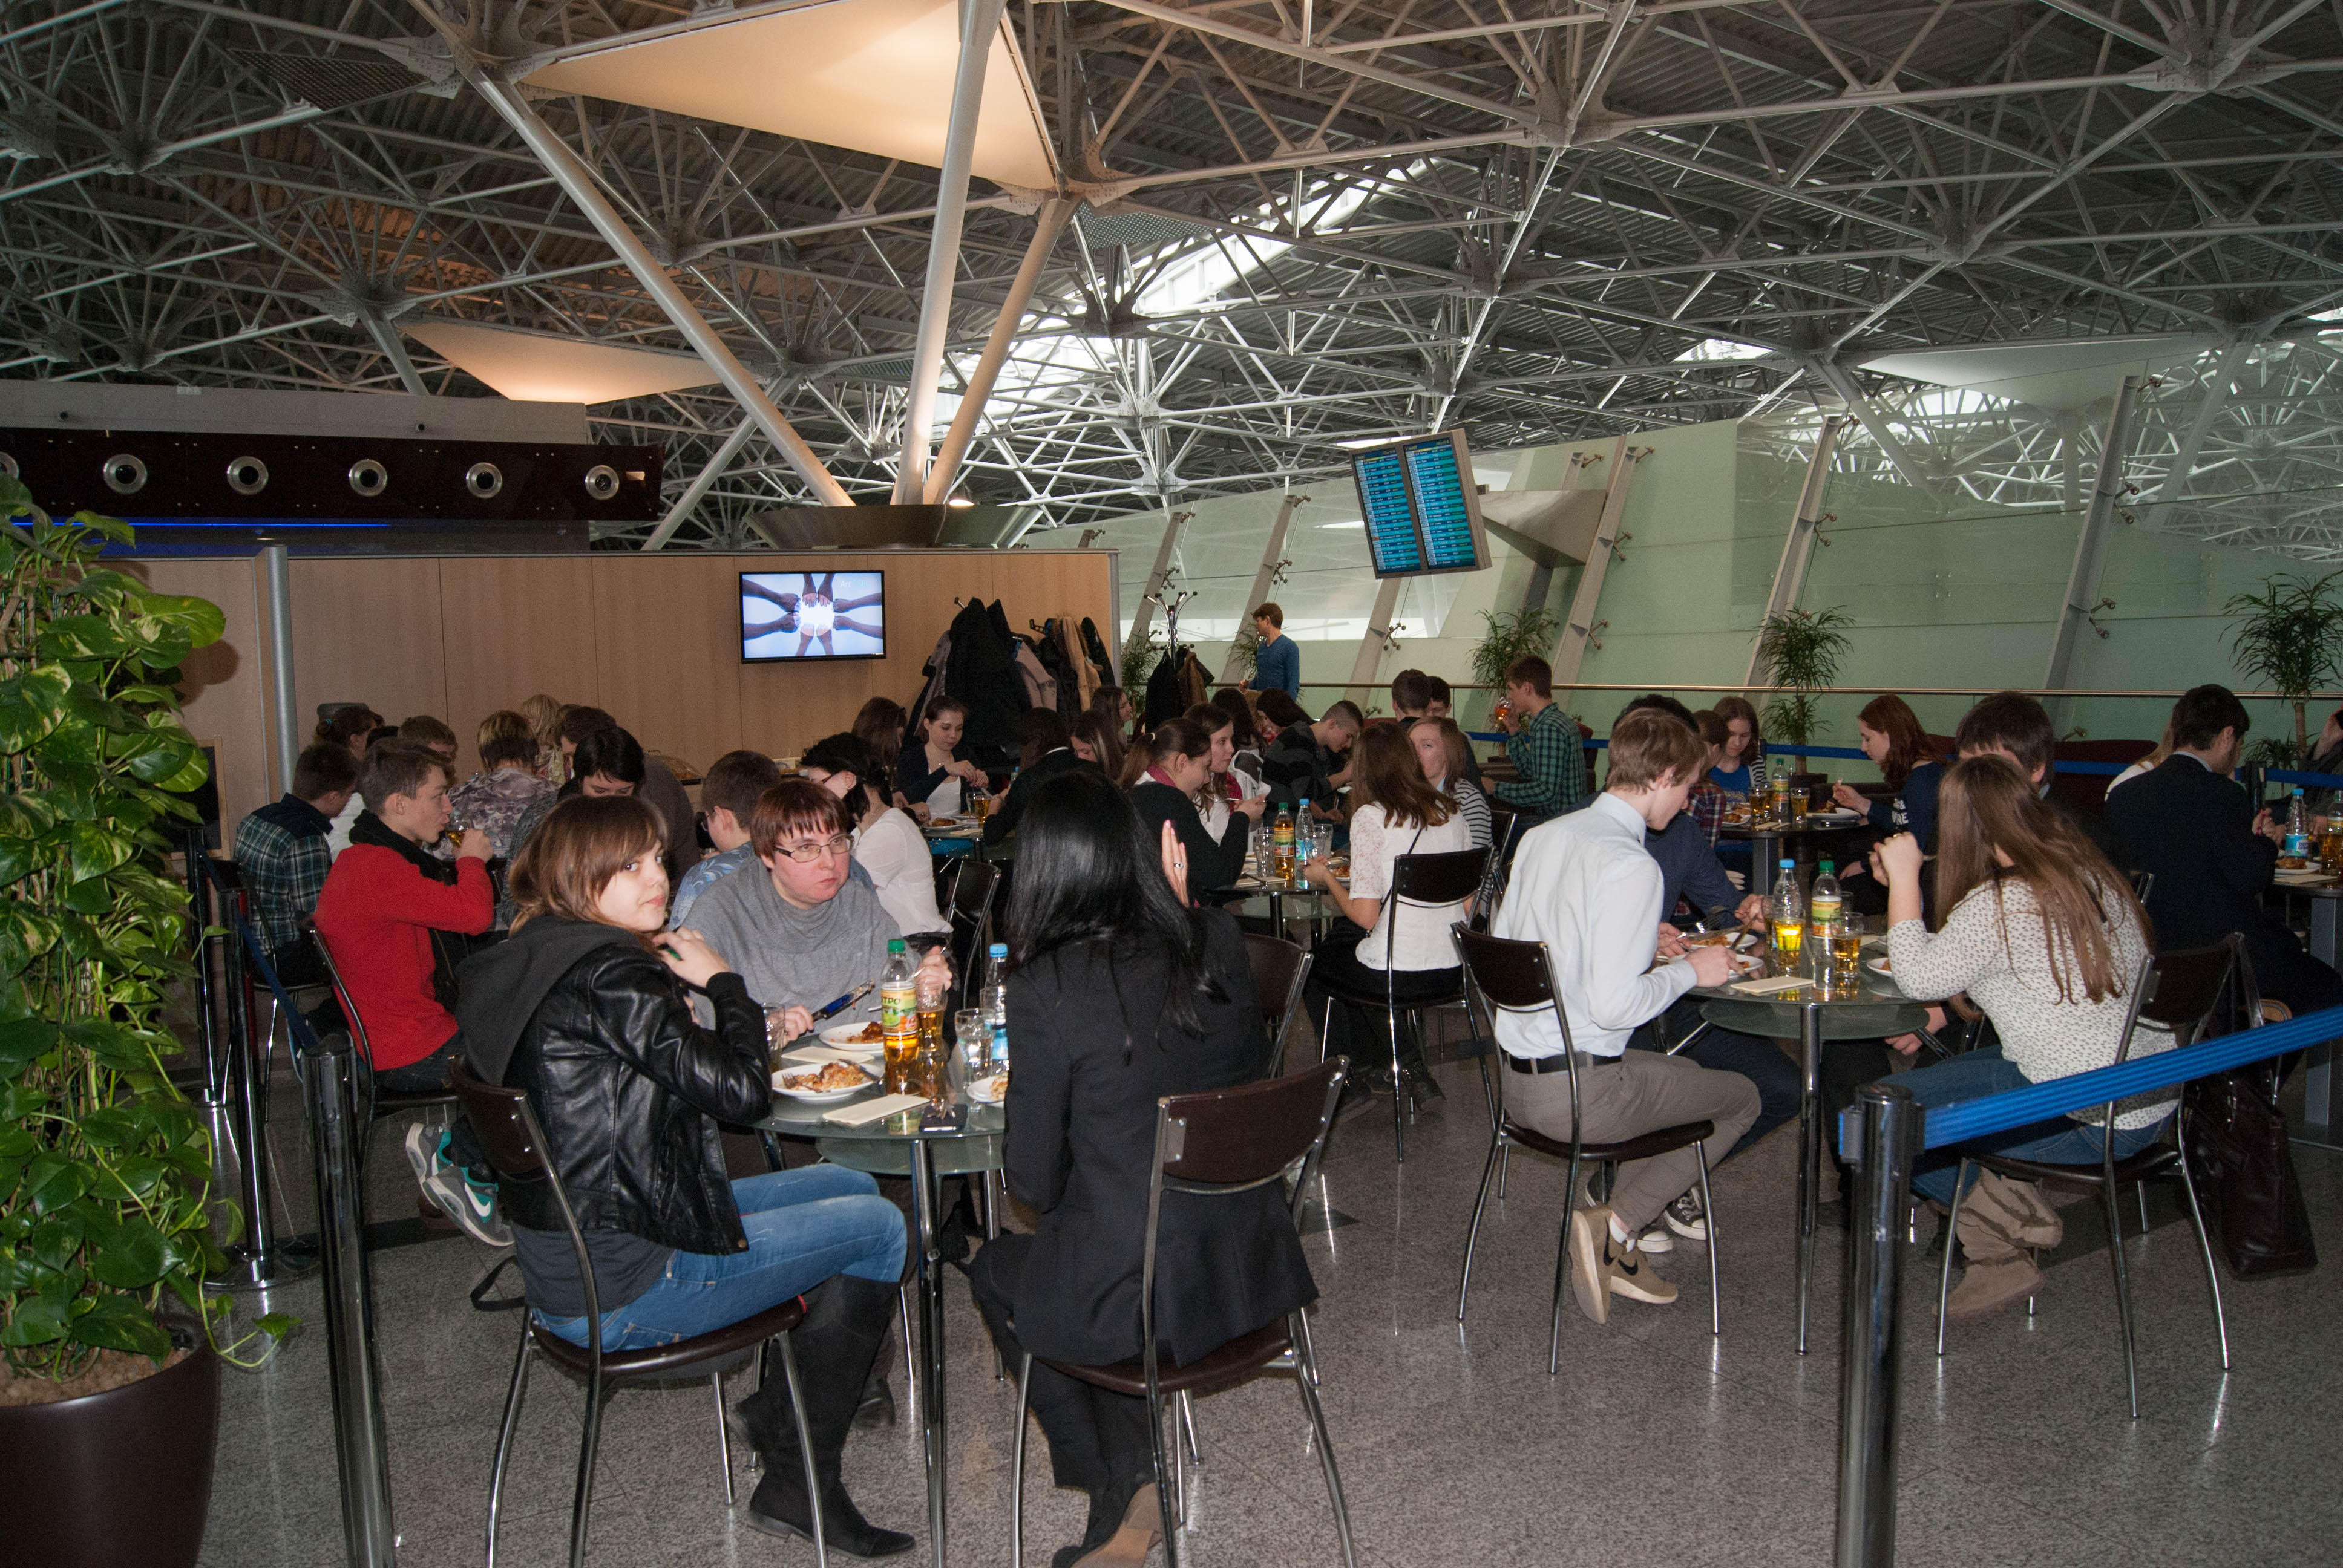 Аэропорт Внуково поддерживает программу профессиональной ориентации школьников | Международный аэропорт Внуково